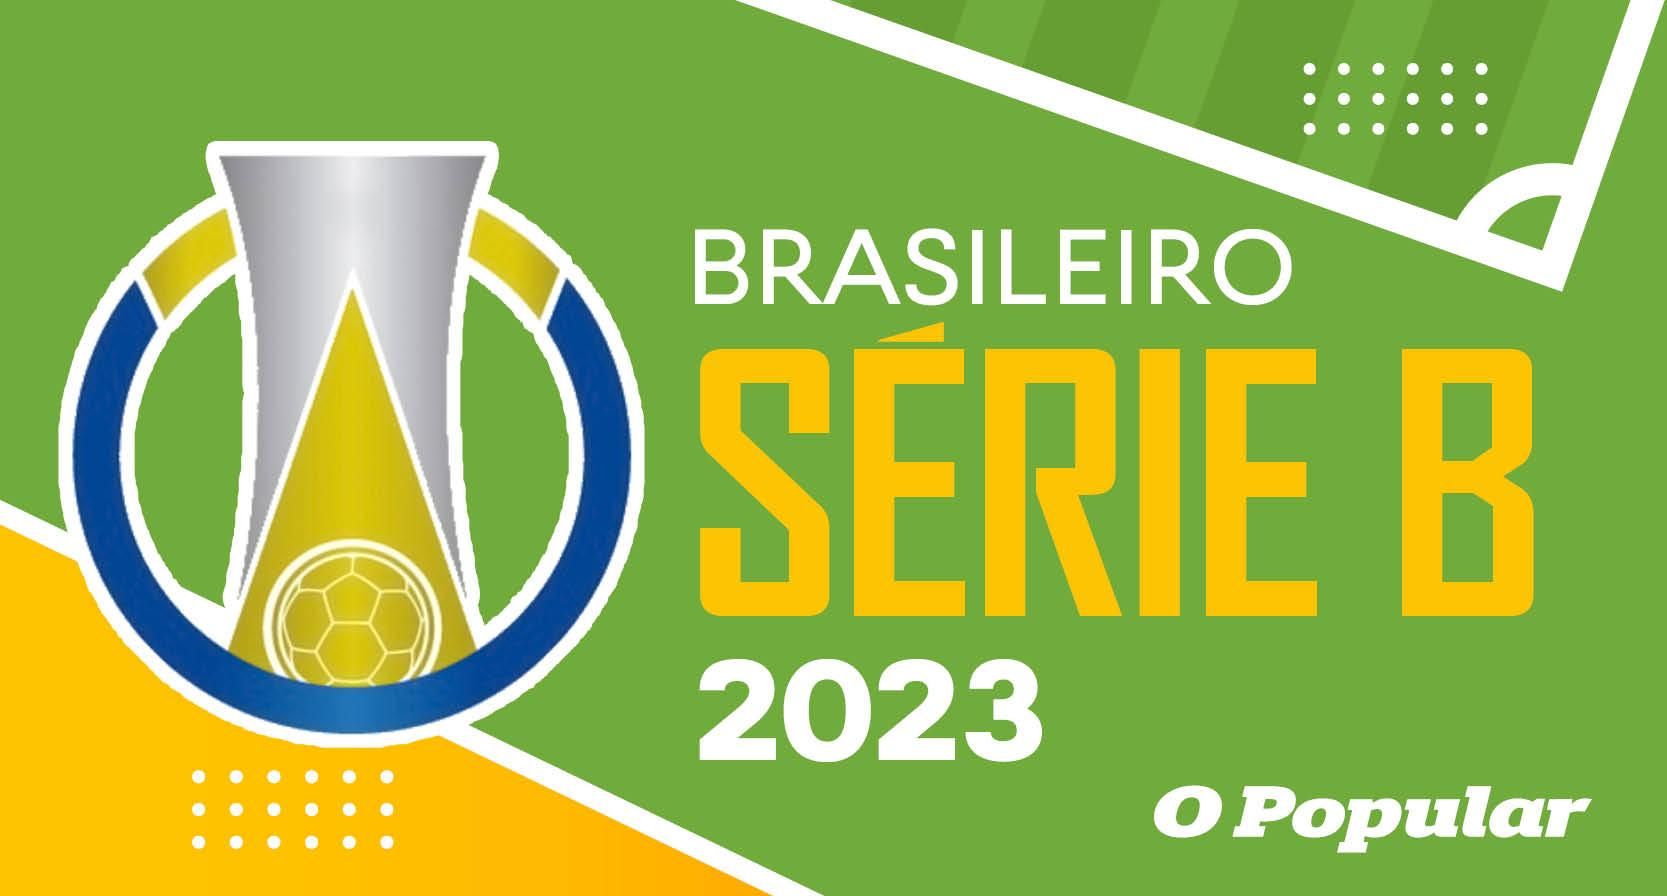 Vocês tem noção que o provável campeão brasileiro de 2023 foi